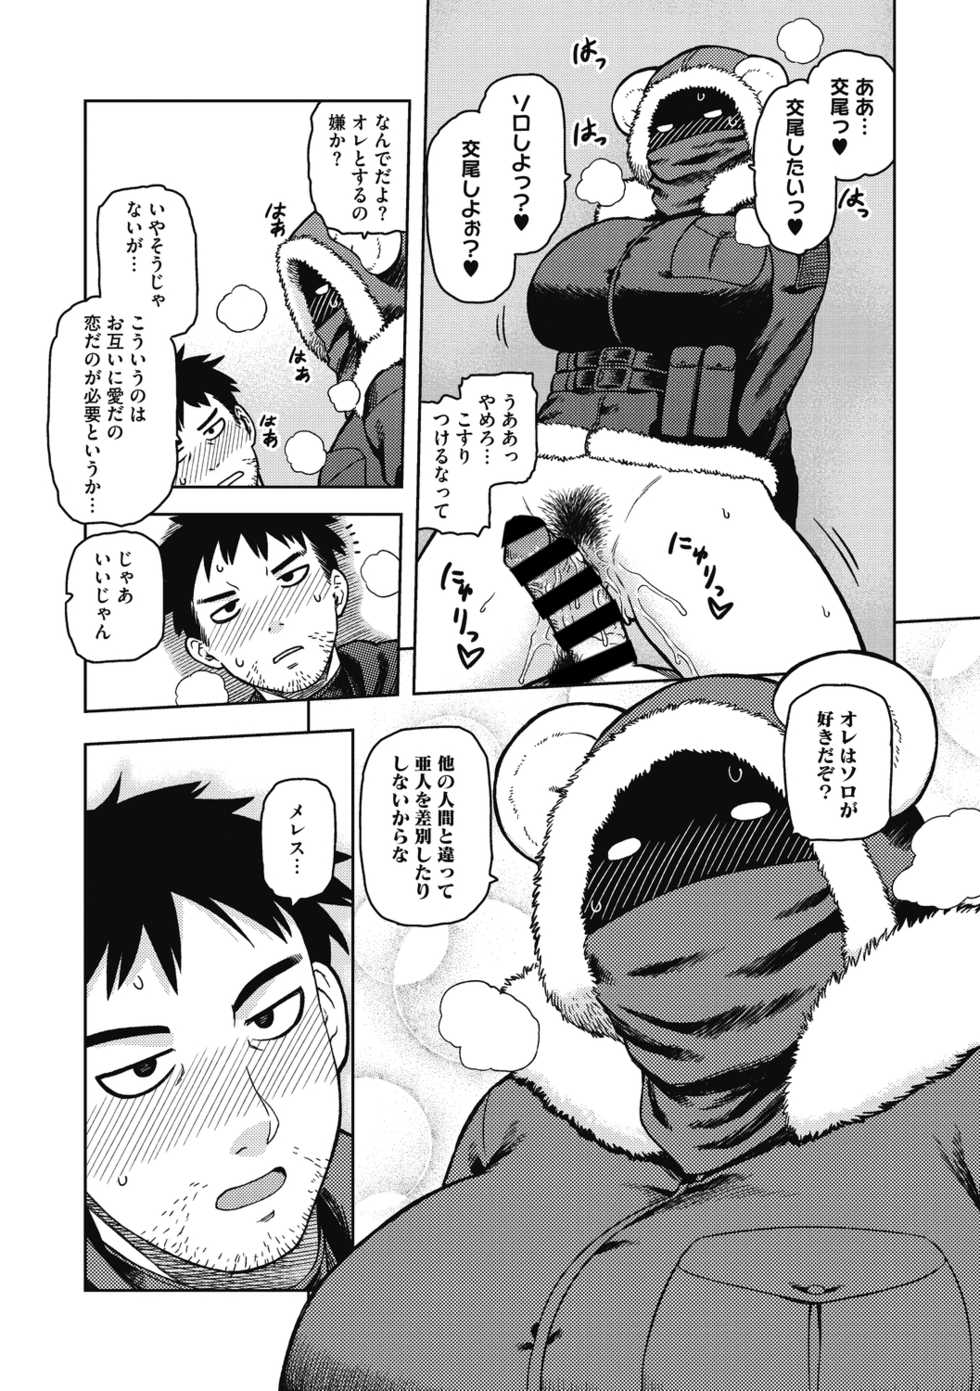 [Tsukudani] I shuwa kān ★ kabegami omake-tsuki [Digital] - Page 39